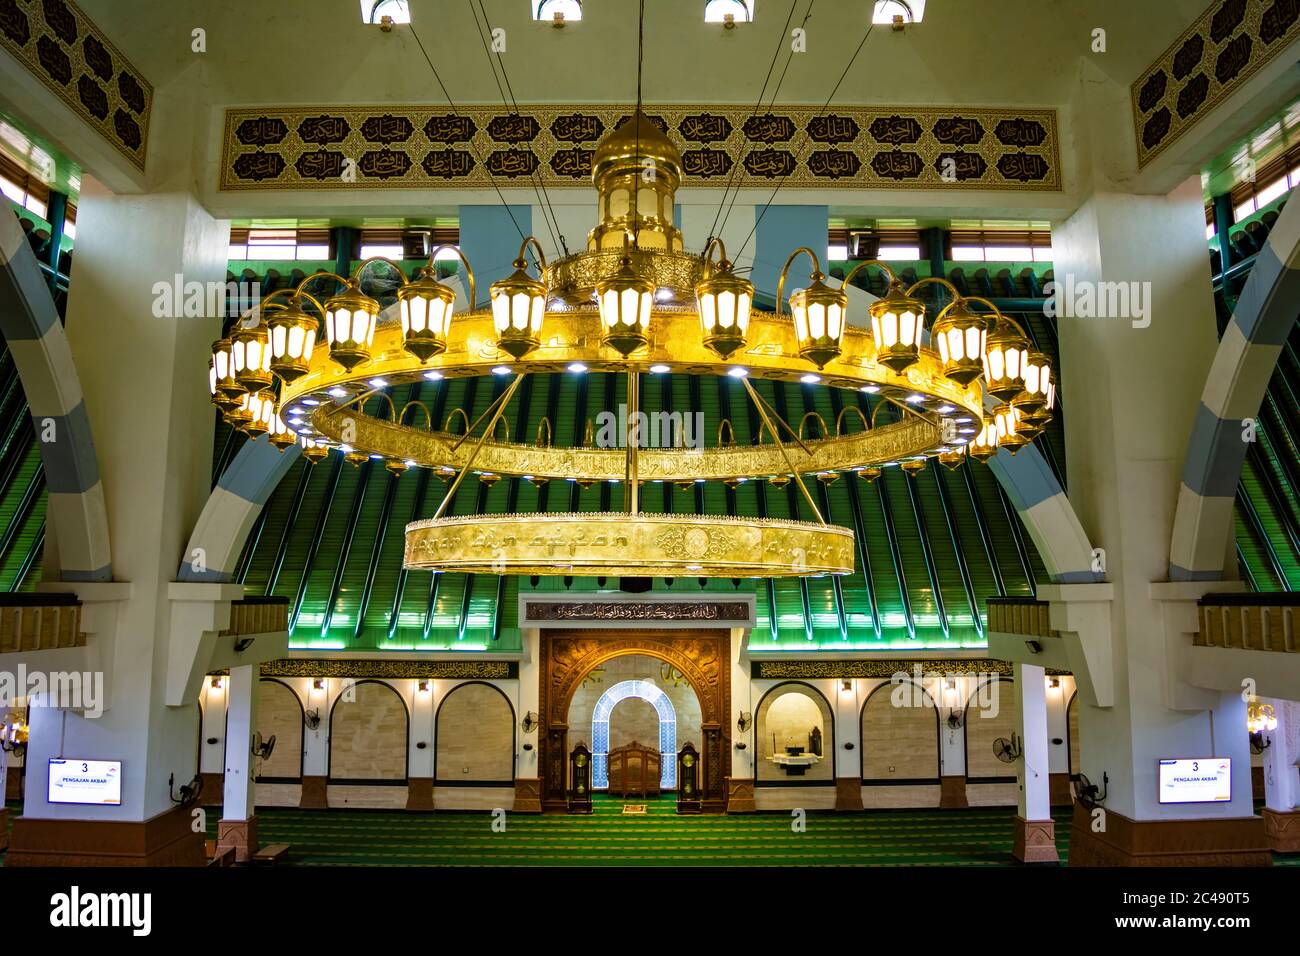 Semarang, Indonesia - CIRCA Nov 2019: Interior of The Great Mosque of Central Java (Masjid Agung Jawa Tengah). Stock Photo